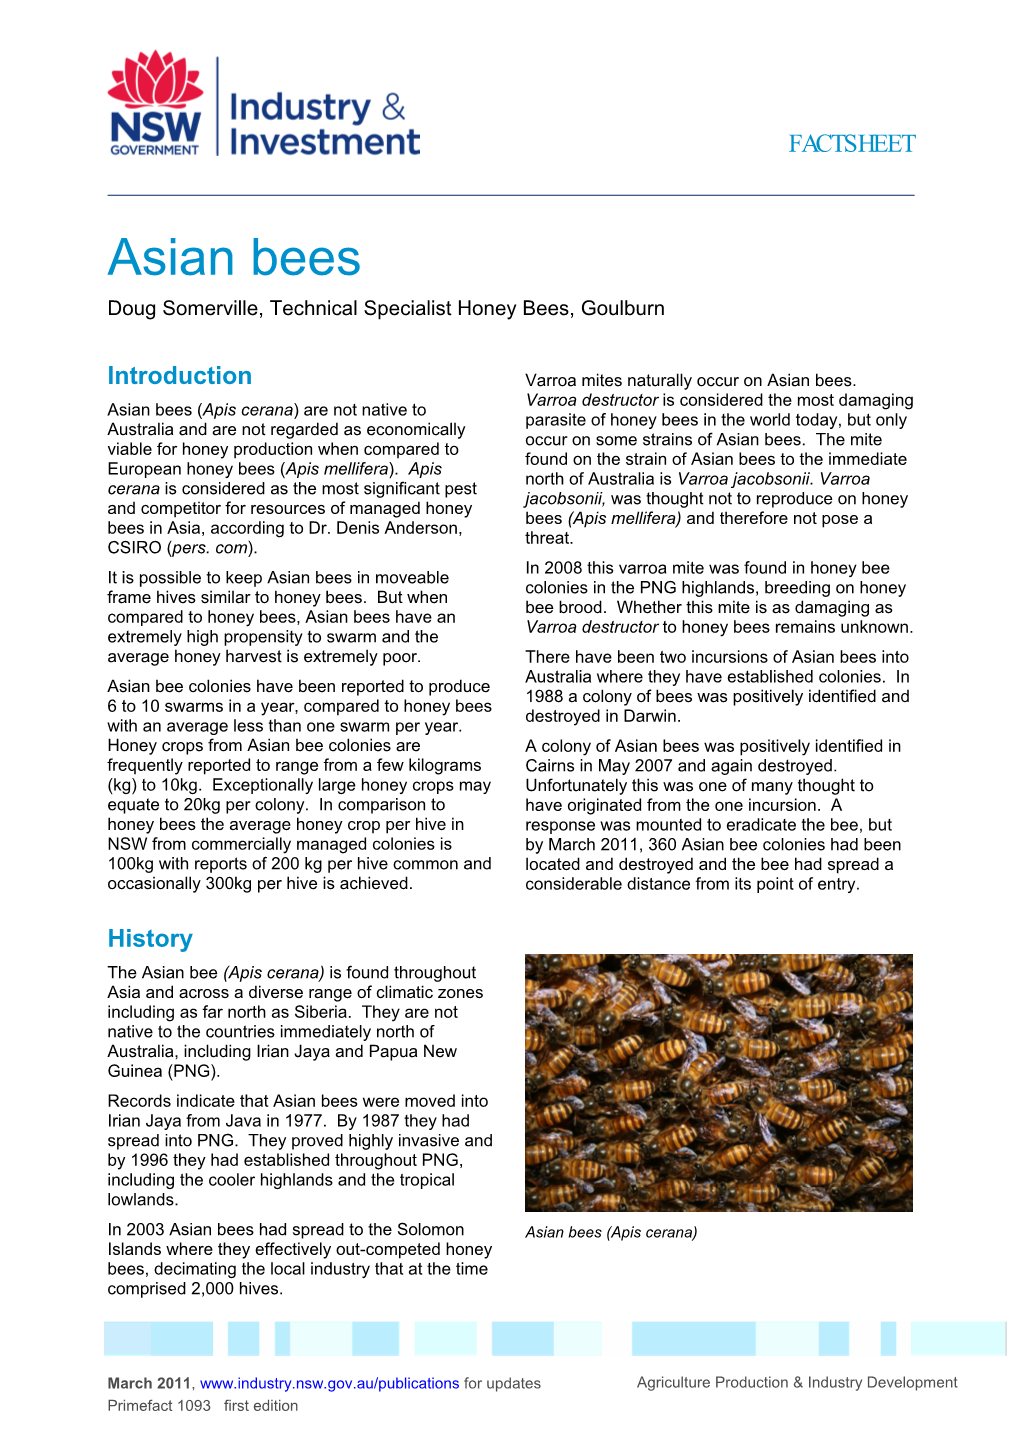 Asian Bees Doug Somerville, Technical Specialist Honey Bees, Goulburn